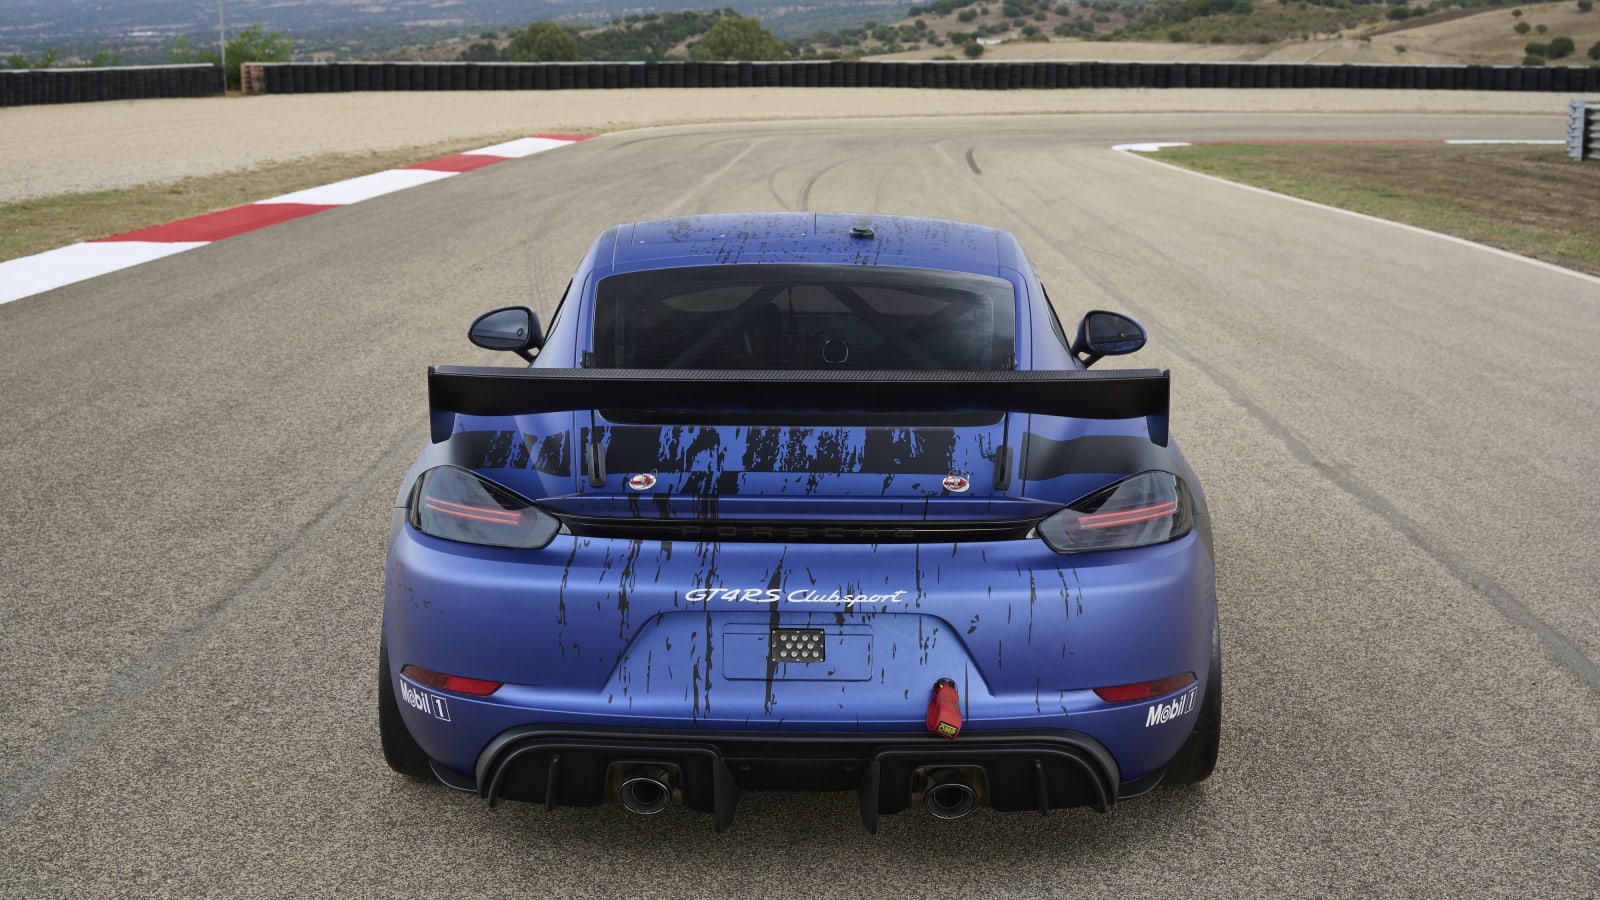 Der neue Porsche Cayman GT4 RS Clubsport ist ein Rennwagen mit GT3-Cup-Triebwerk